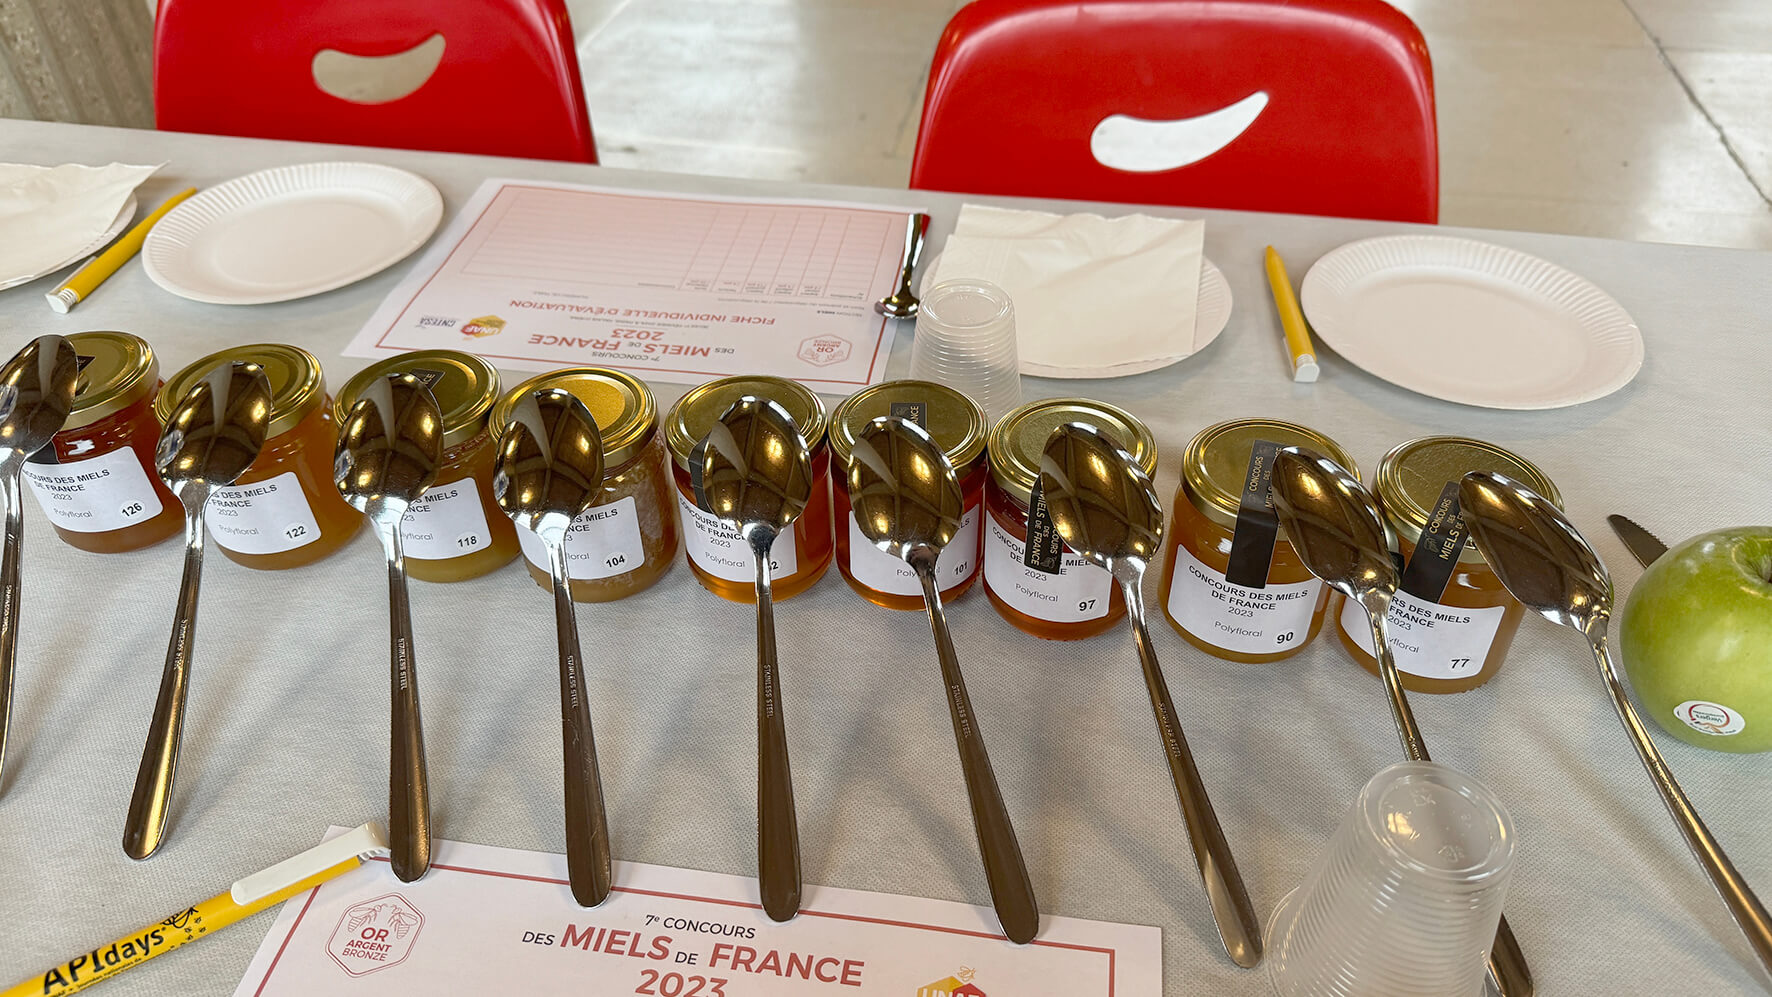 Concours des miels de France 2023